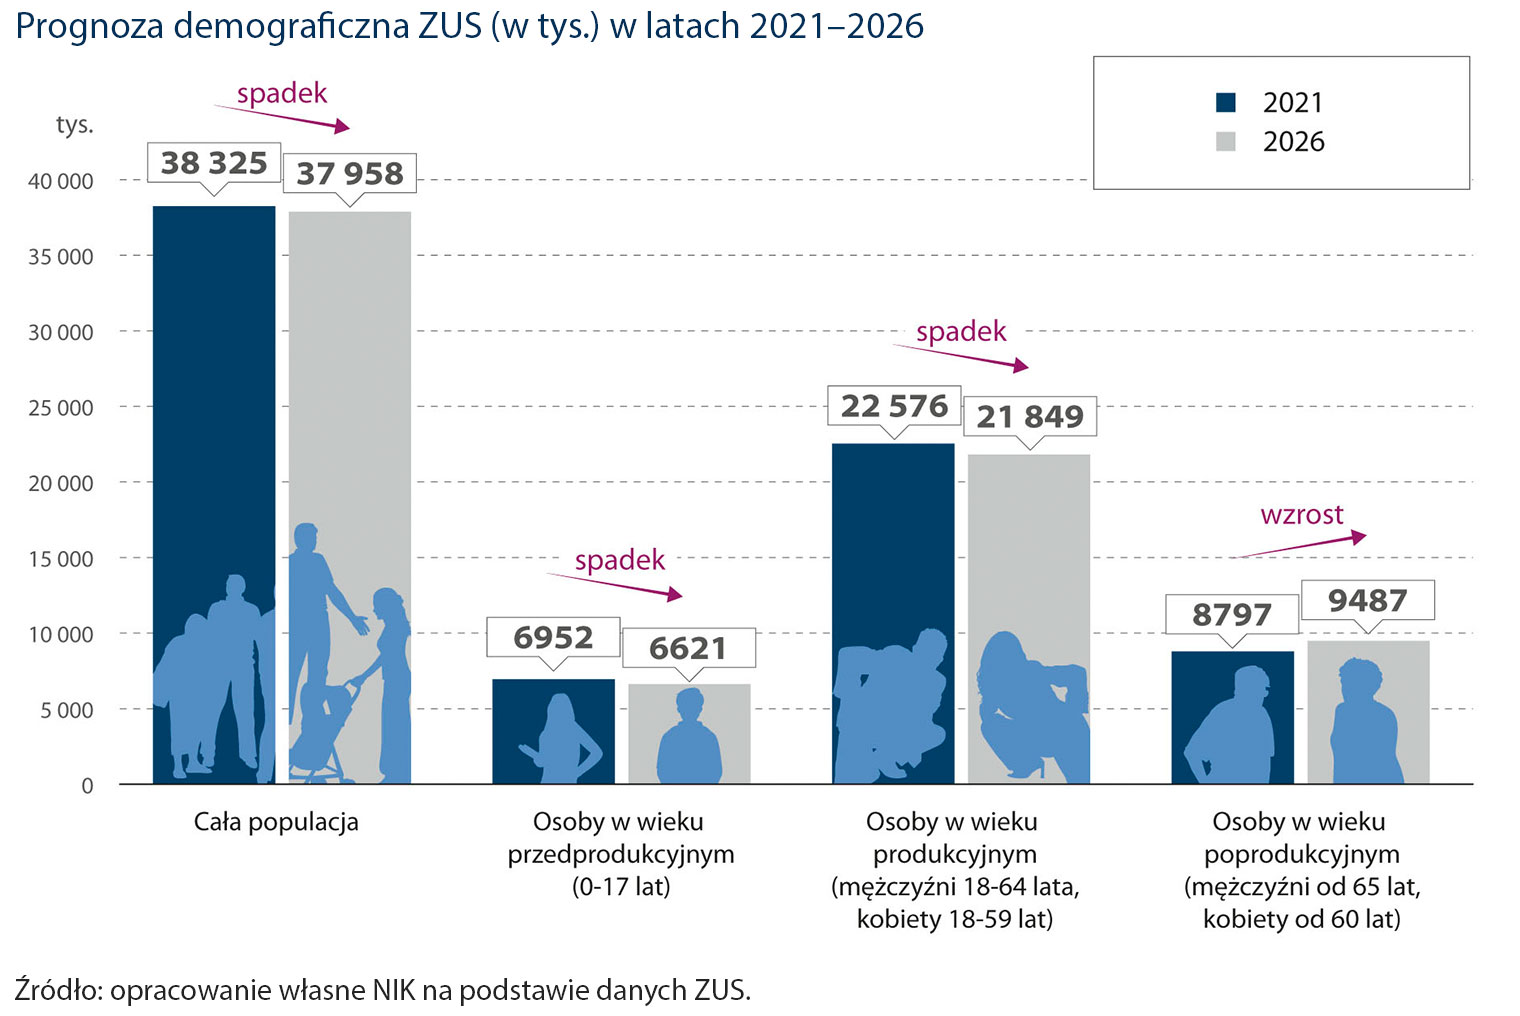 Prognoza demograficzna ZUS (w tys.) w latach 2021–2026 (opis obrazka poniżej)